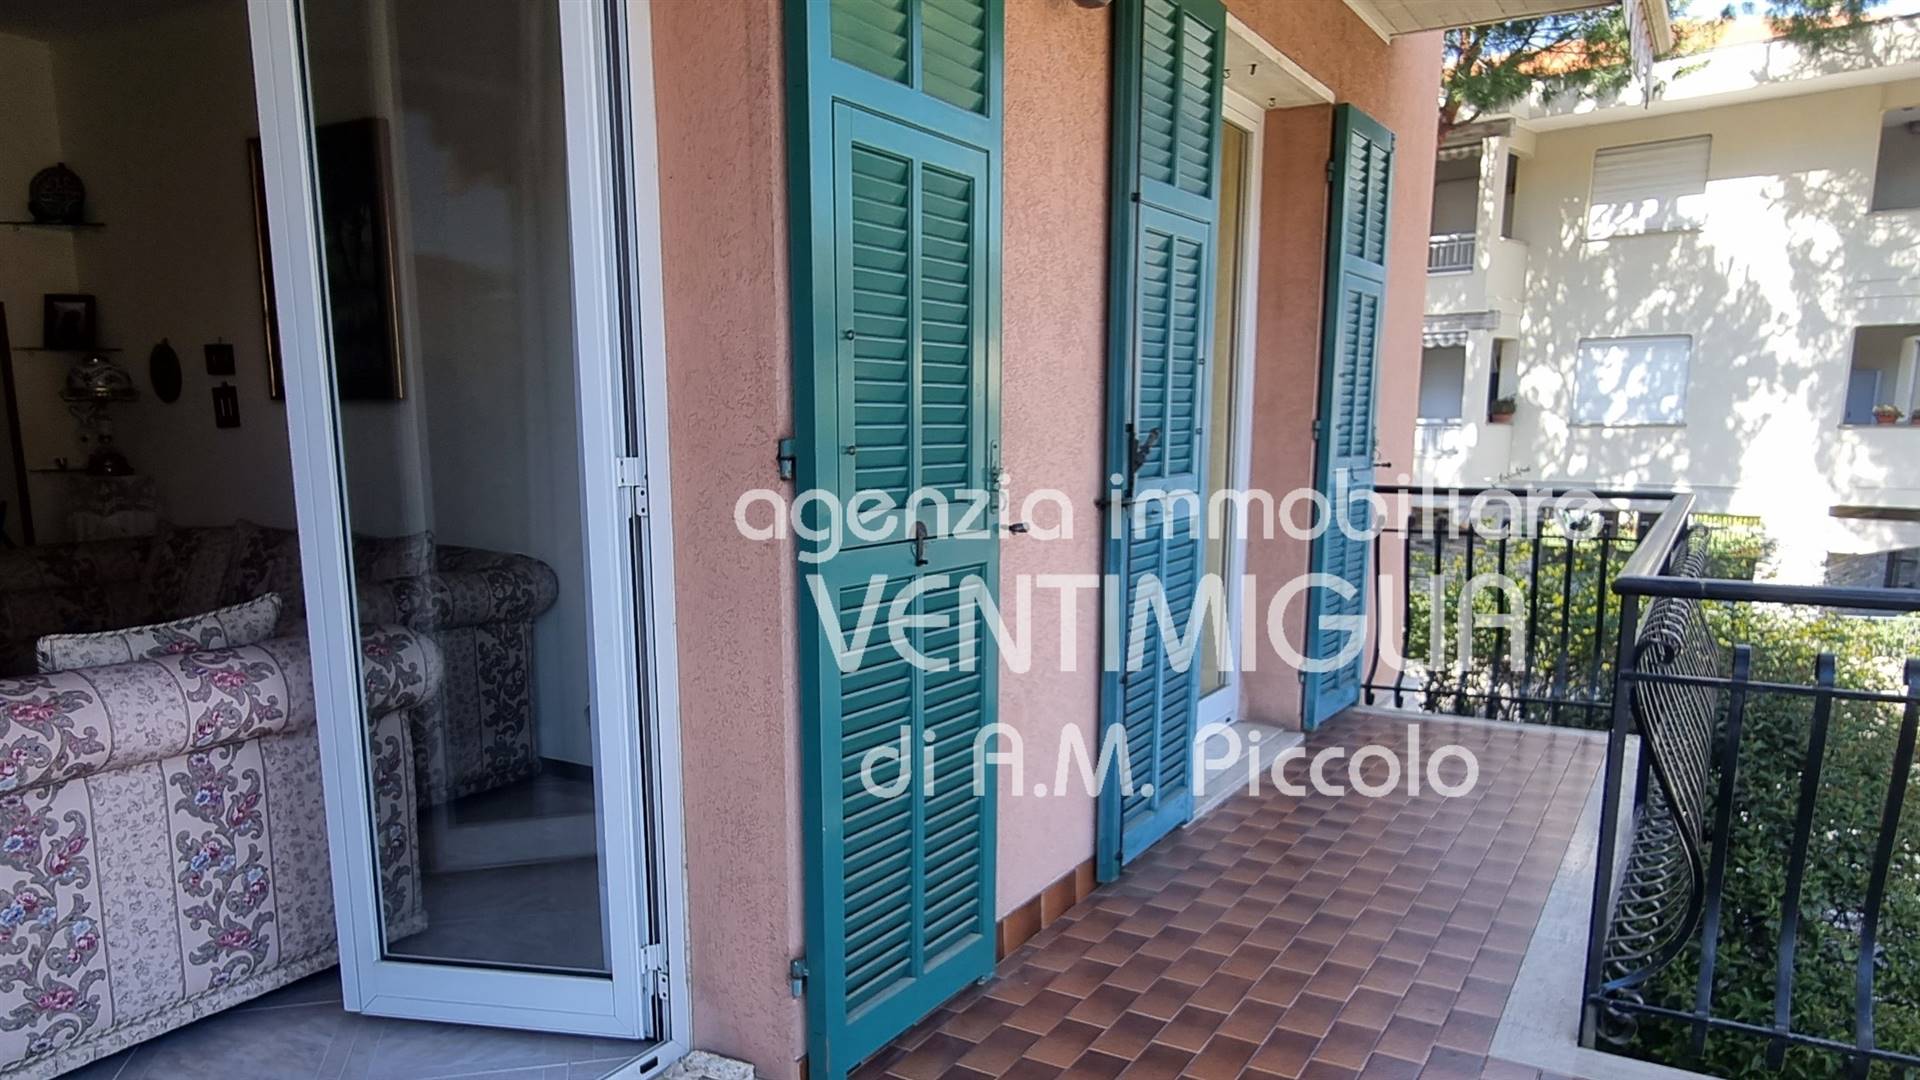 Appartamento in vendita a Bordighera, 6 locali, prezzo € 350.000 | PortaleAgenzieImmobiliari.it